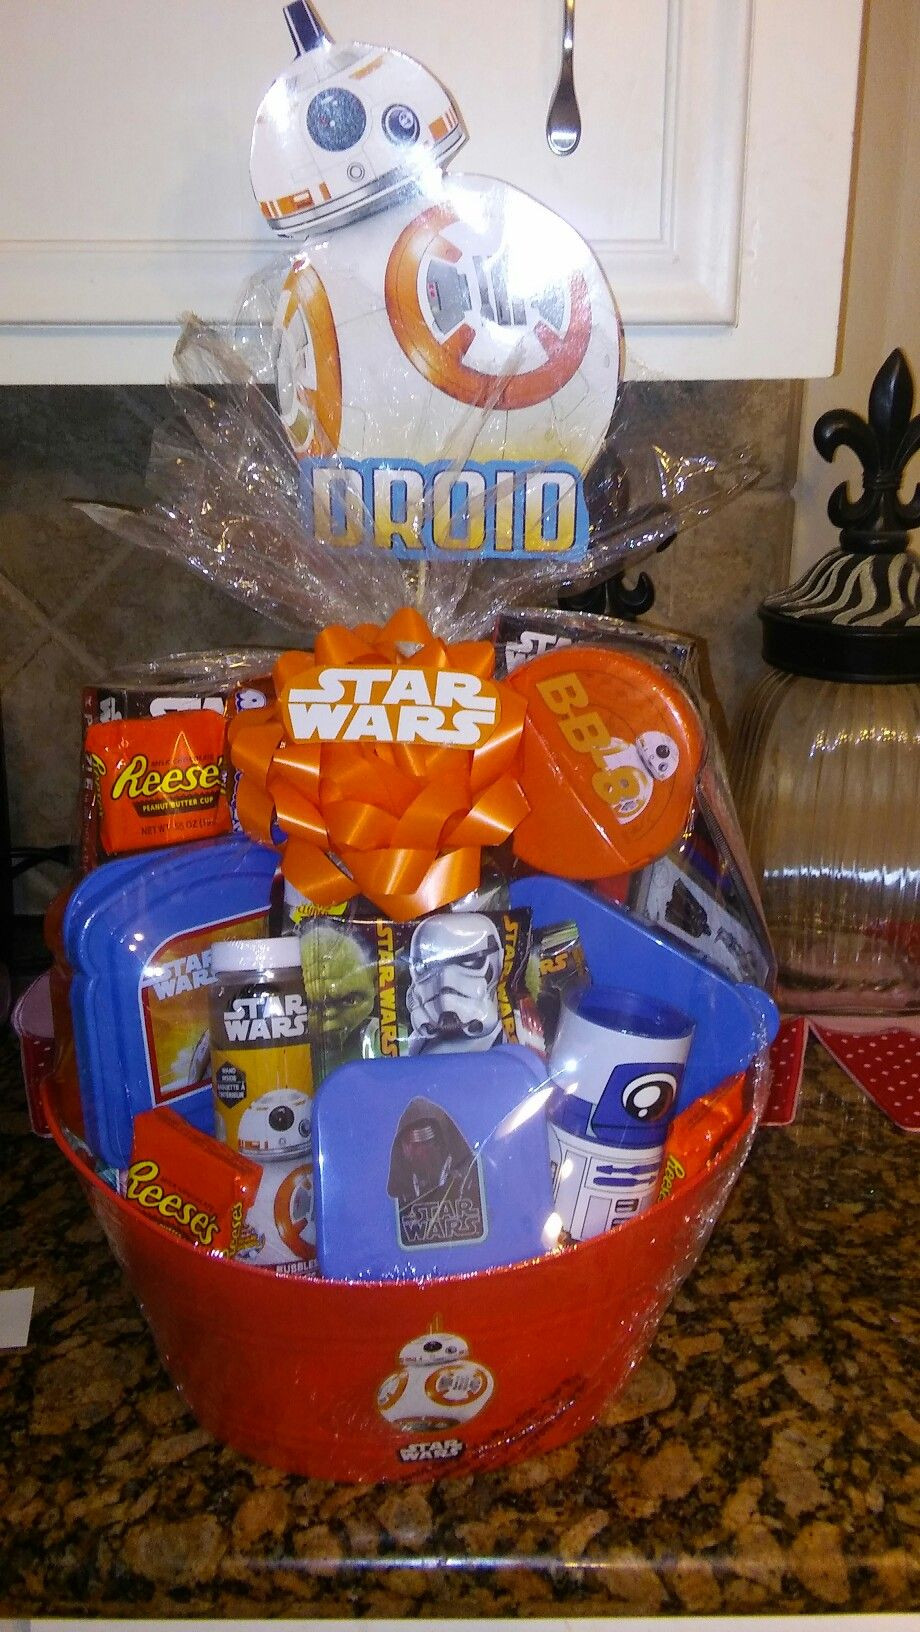 Star Wars Gift Basket Ideas
 Star Wars Easter basket